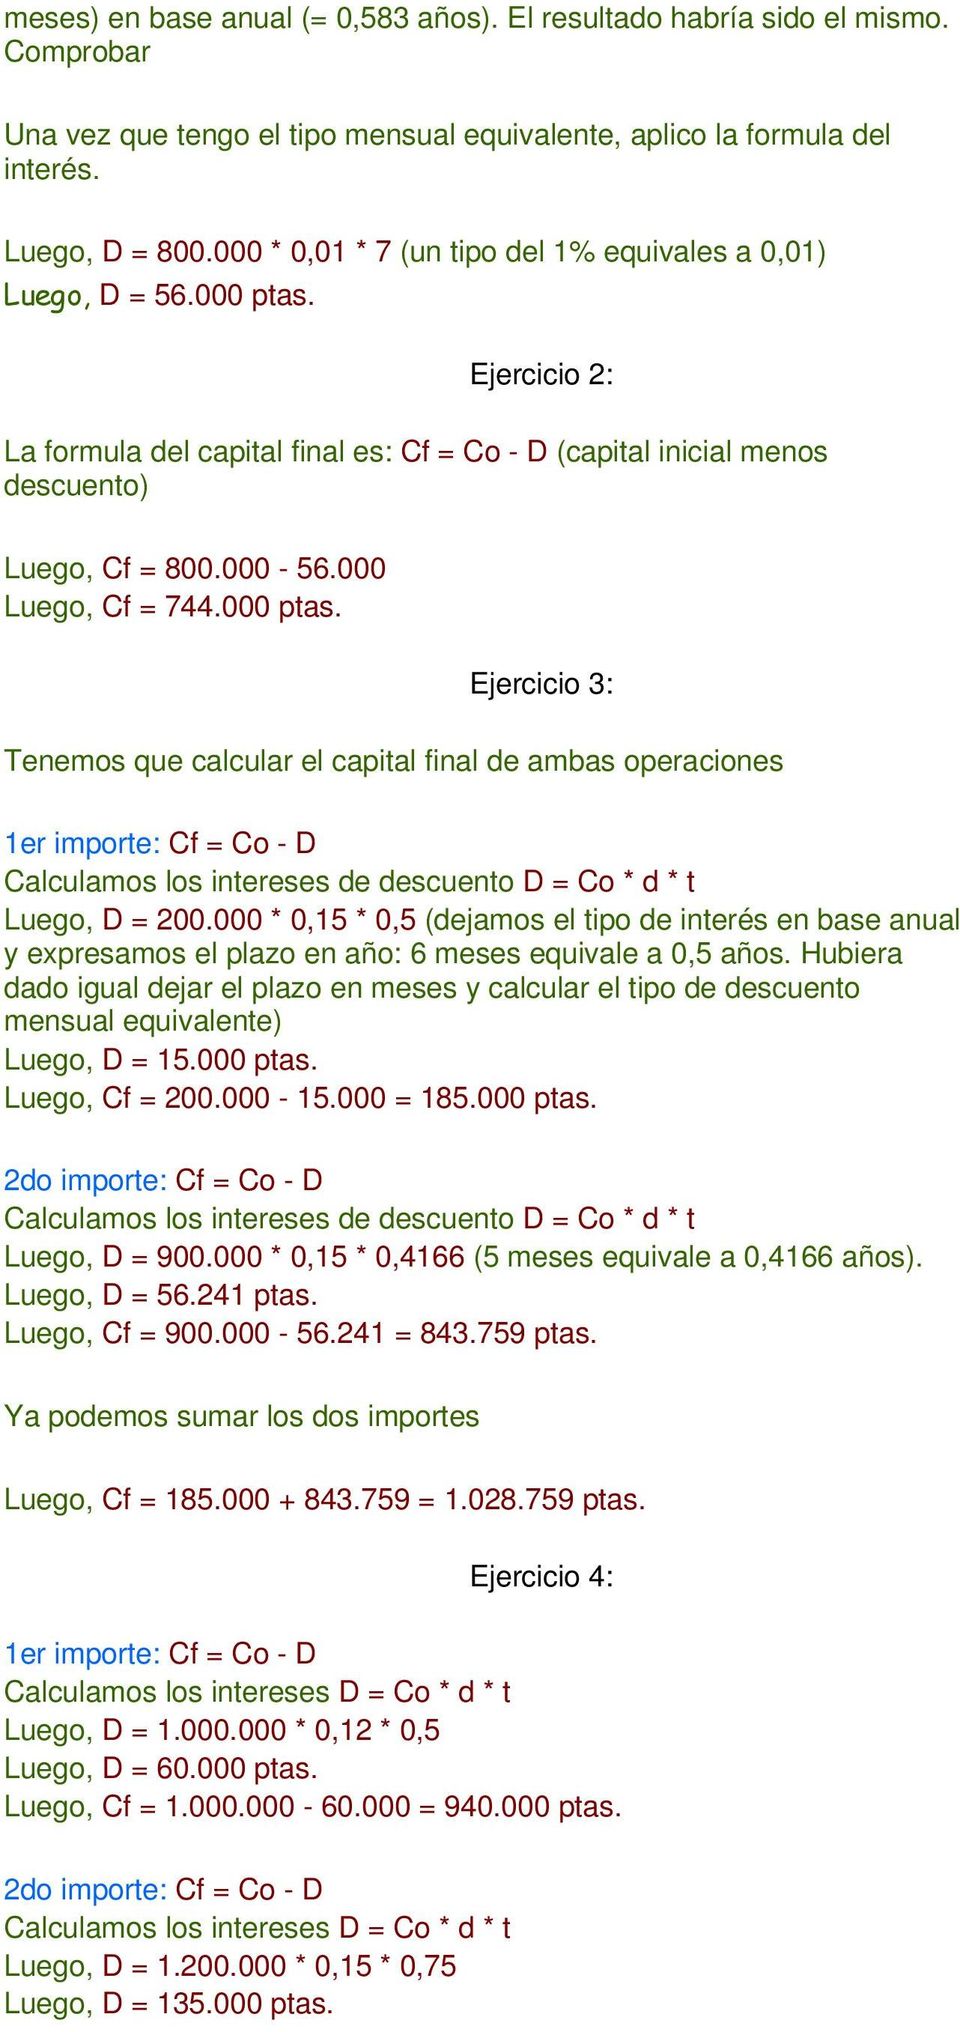 000 Luego, Cf = 744.000 ptas. Ejercicio 3: Tenemos que calcular el capital final de ambas operaciones 1er importe: Cf = Co - D Calculamos los intereses de descuento D = Co * d * t Luego, D = 200.